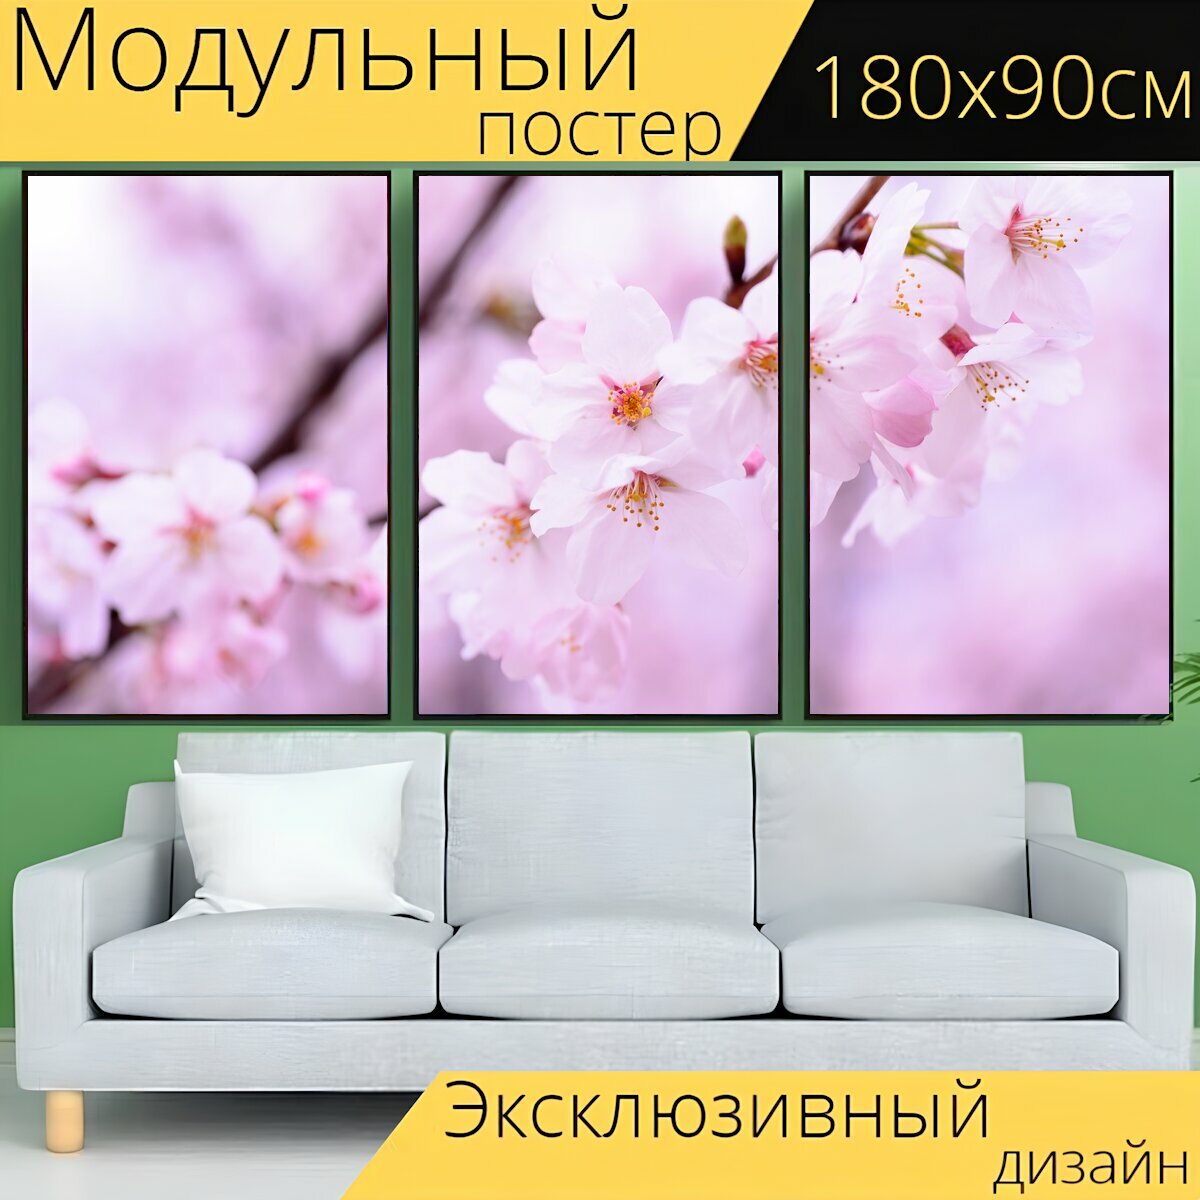 Модульный постер "Завод, весна, цветы" 180 x 90 см. для интерьера